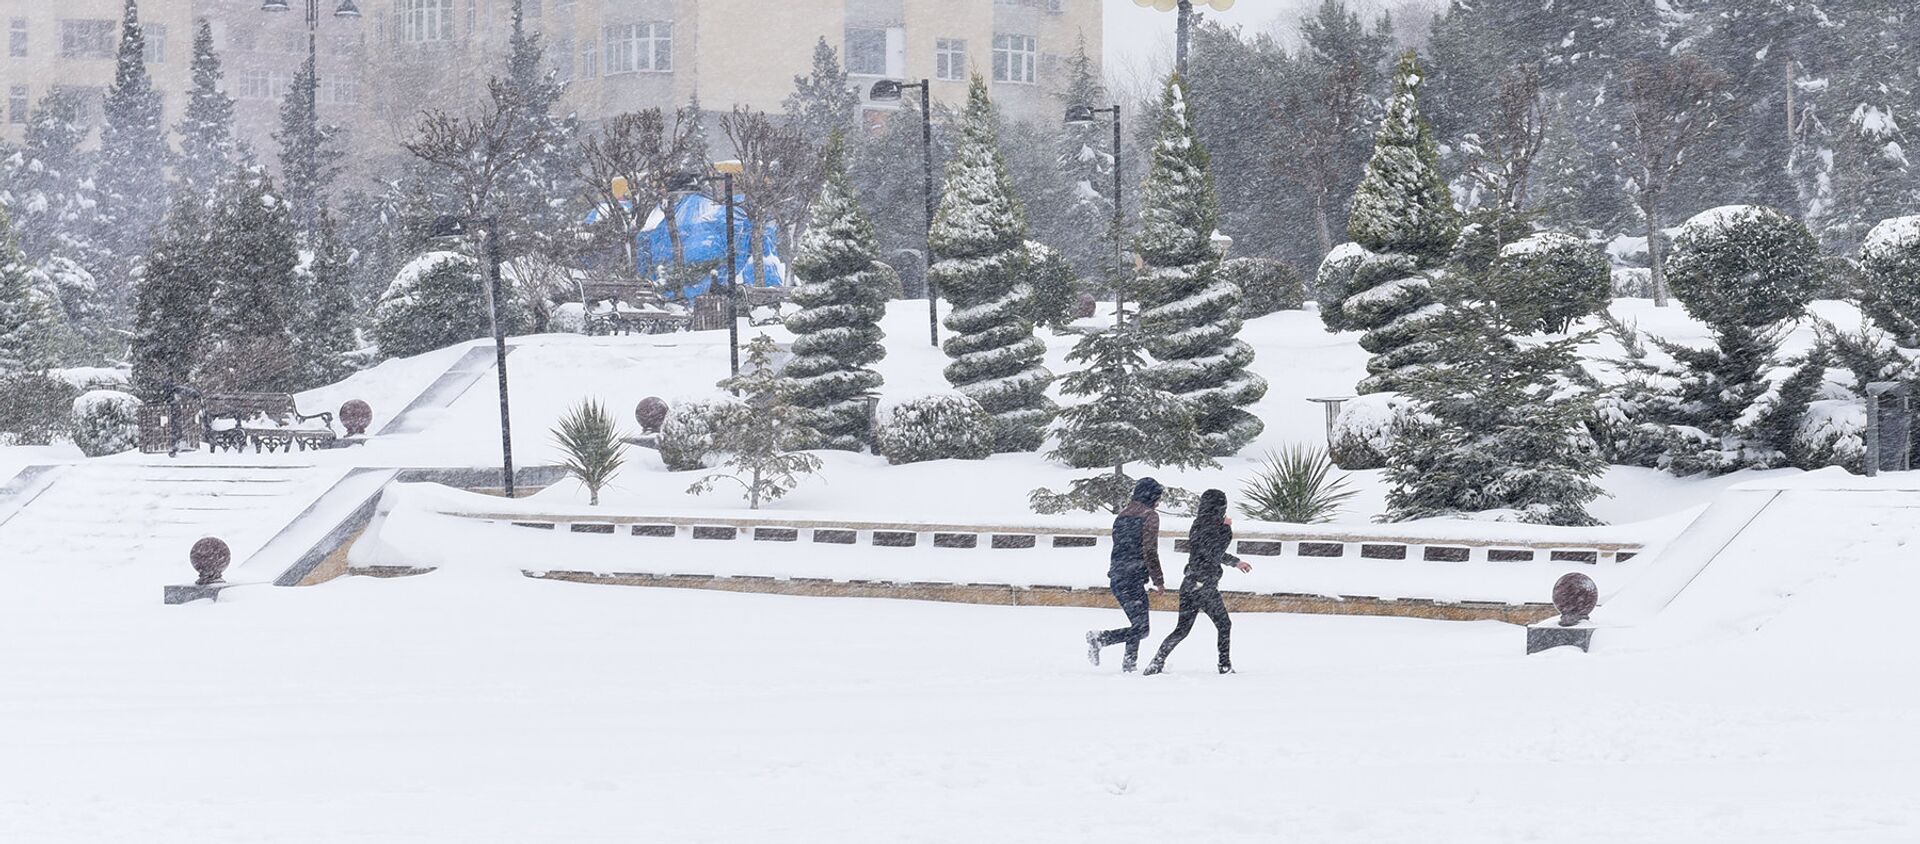 Снег в Баку — кому в радость, а кому в тягость - Sputnik Азербайджан, 1920, 22.02.2021